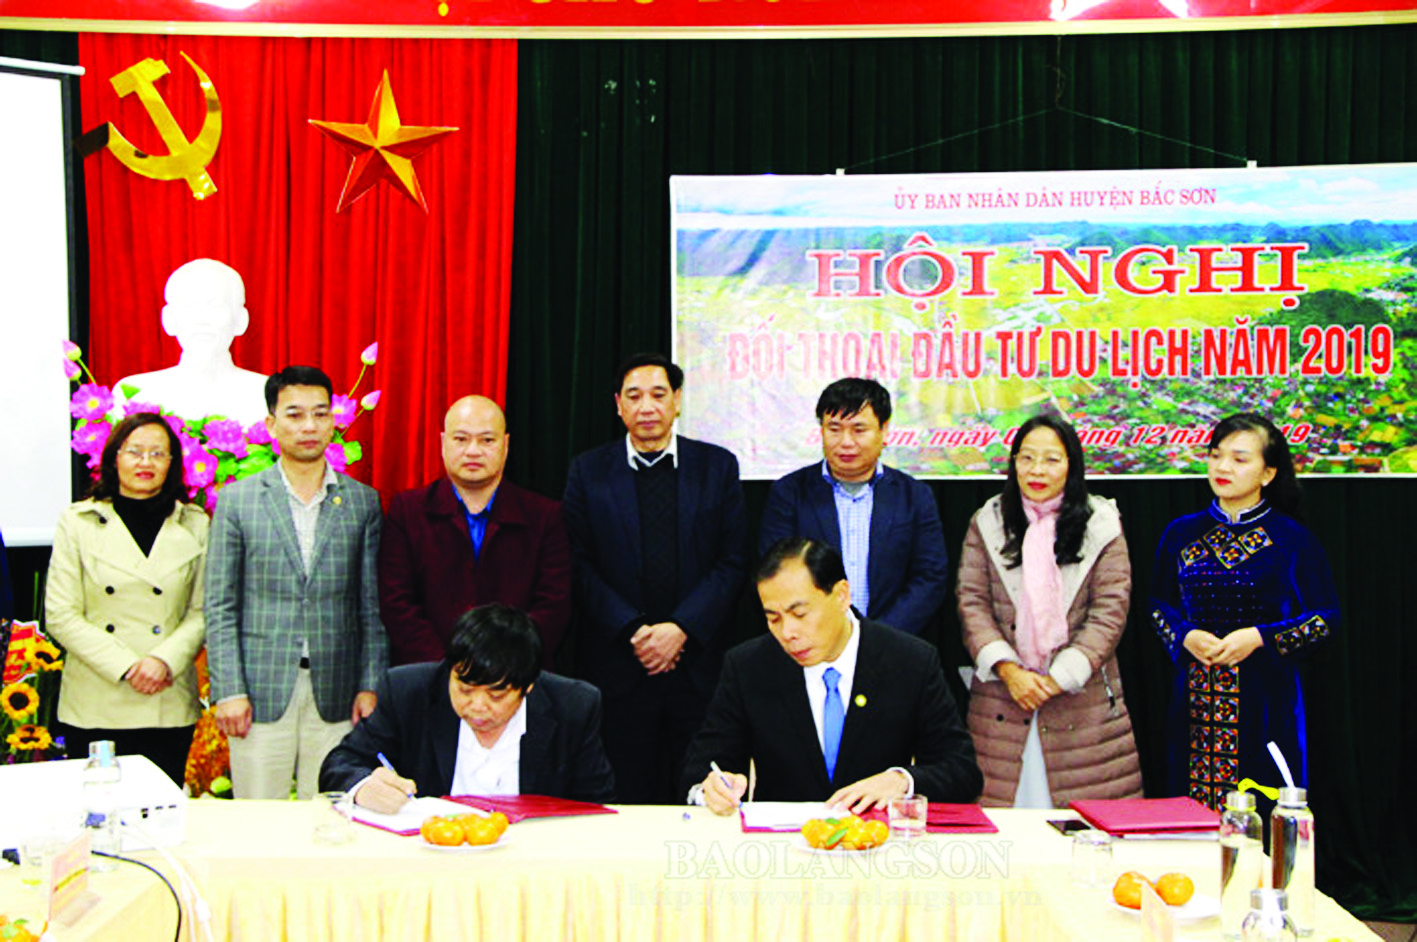 Lãnh đạo UBND Bắc Sơn ký kết biên bản ghi nhớ đầu tư với Công ty TNHH Mạnh Chung